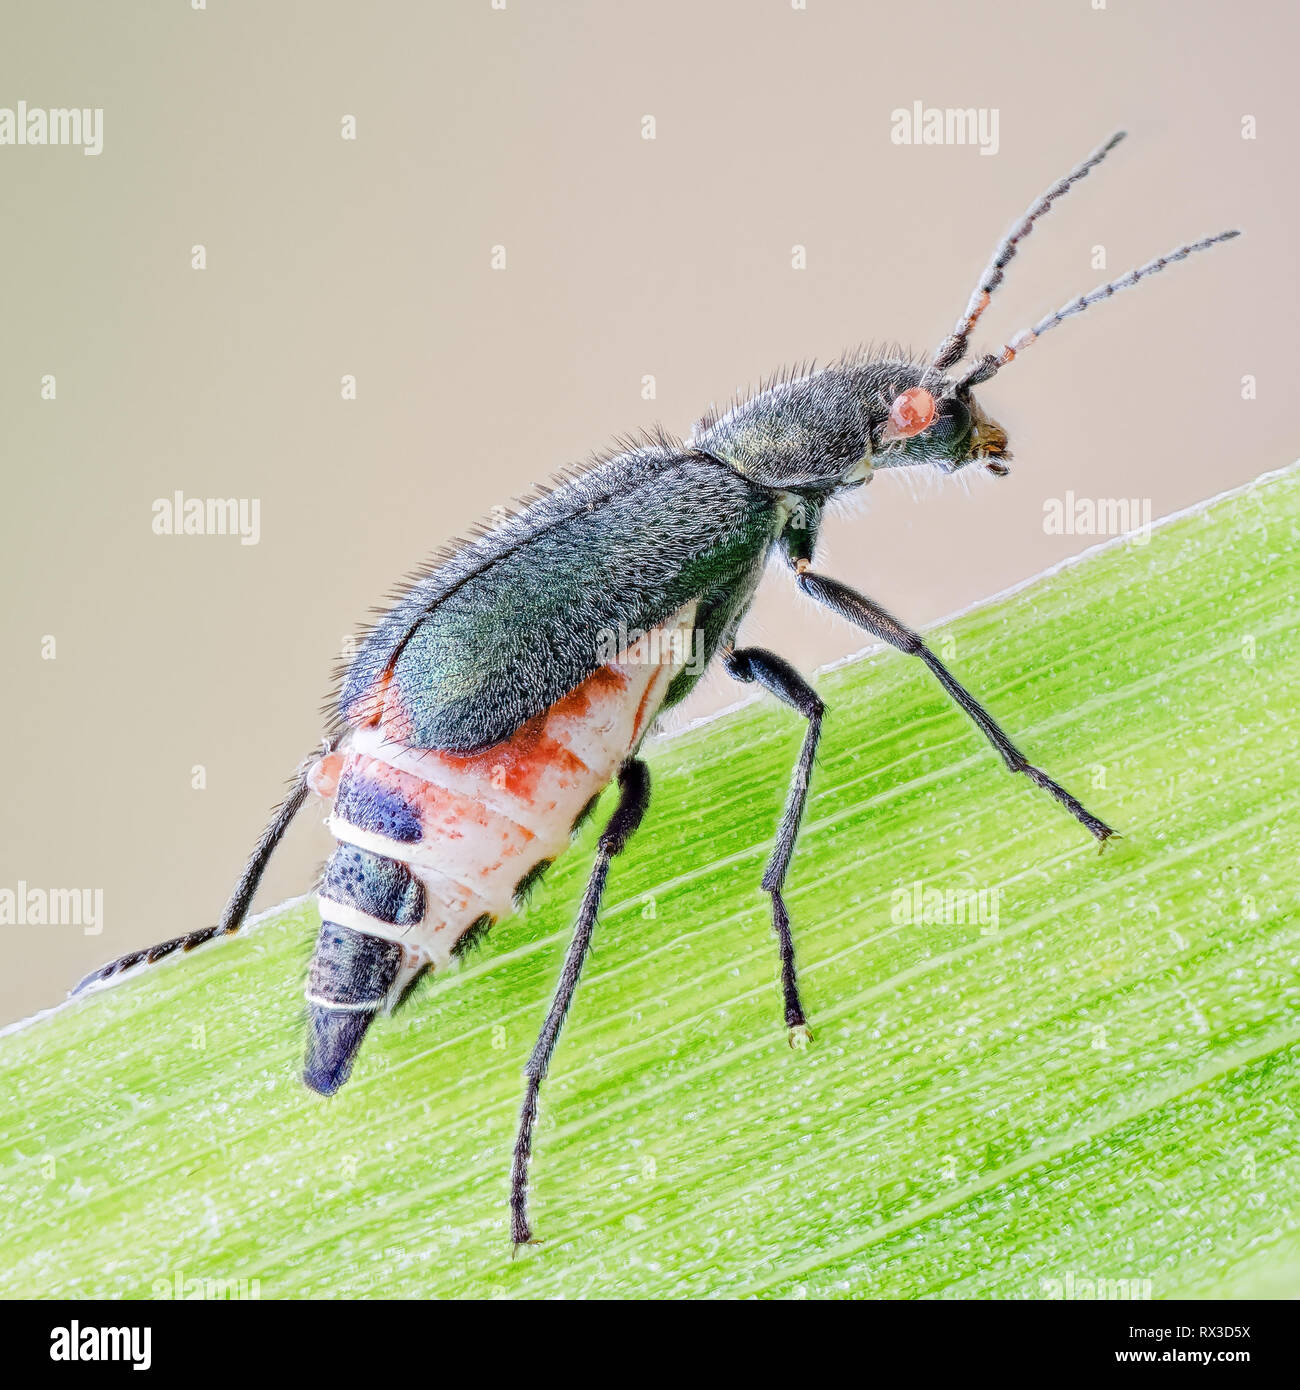 Käfer, Zipfelkäfer Makro, Nahaufnahme mit vielen Details mit Hilfe von Focus Bracketing. Detailreiche Makroaufnahmen von kleinen Tieren Stock Photo